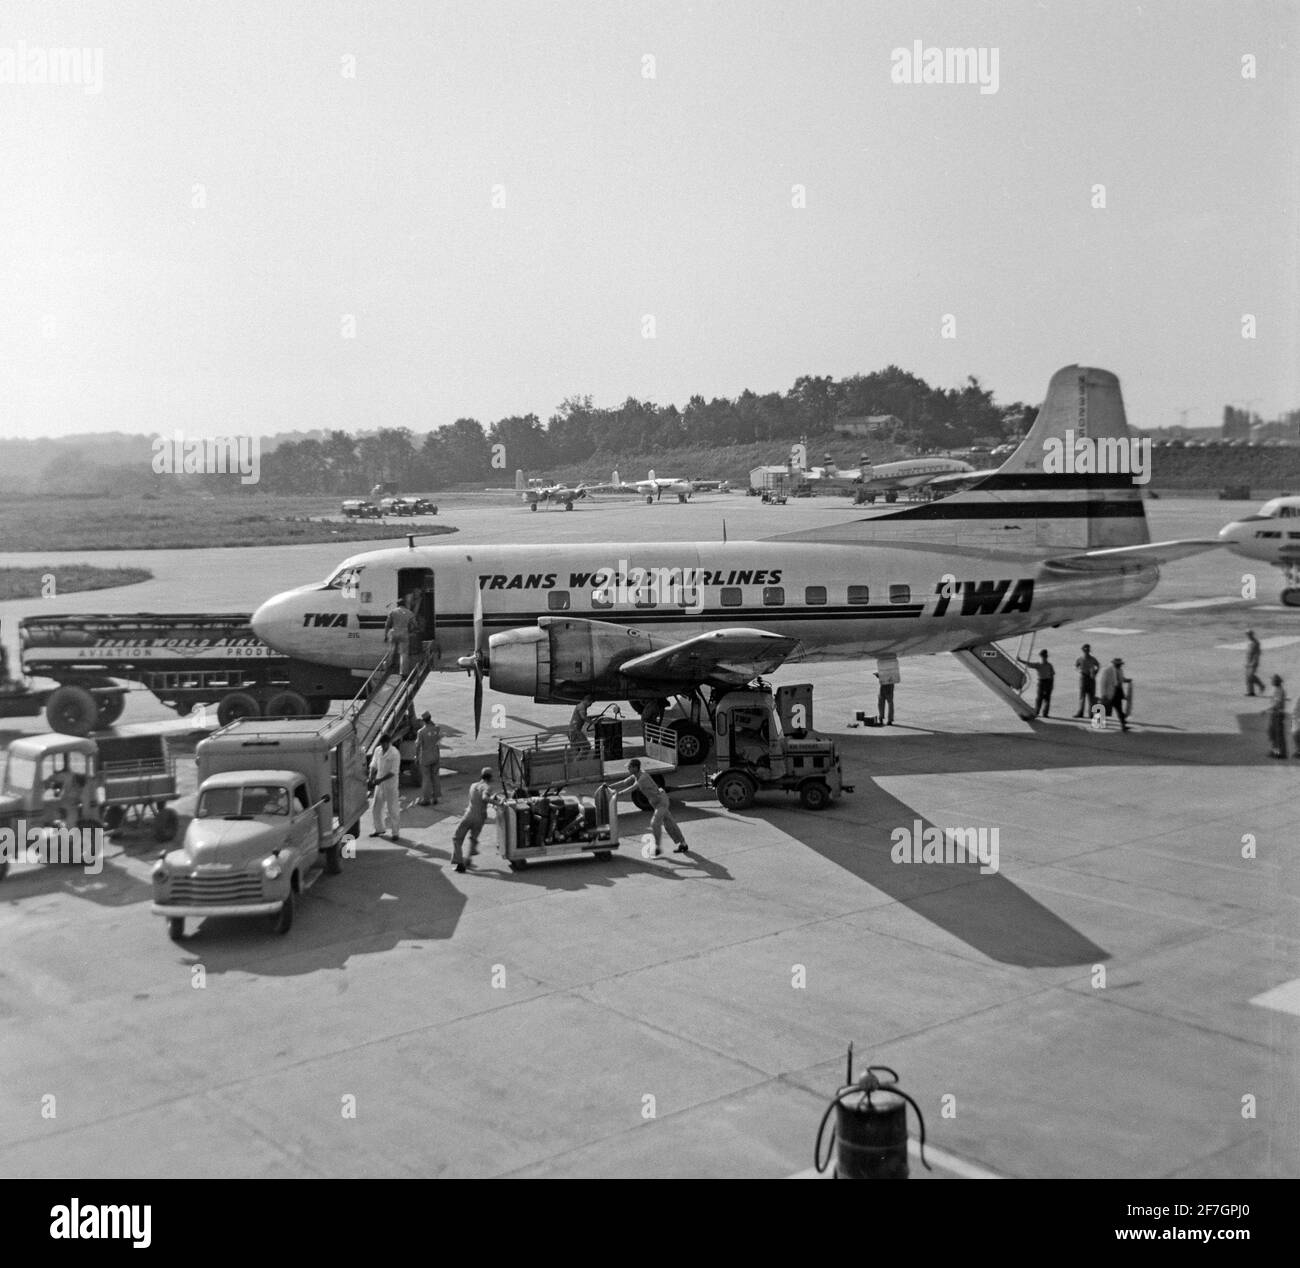 Ein altes Schwarz-Weiß-Foto aus dem Jahr 1956, das ein TWA, Trans World Airlines, Martin 202, Seriennummer N93205, auf einem Flughafen in den USA zeigt. Das Flugzeug wird für den Flug vorbereitet und ist von einer Vielzahl von Flughafenfahrzeugen und Arbeitern umgeben. Stockfoto